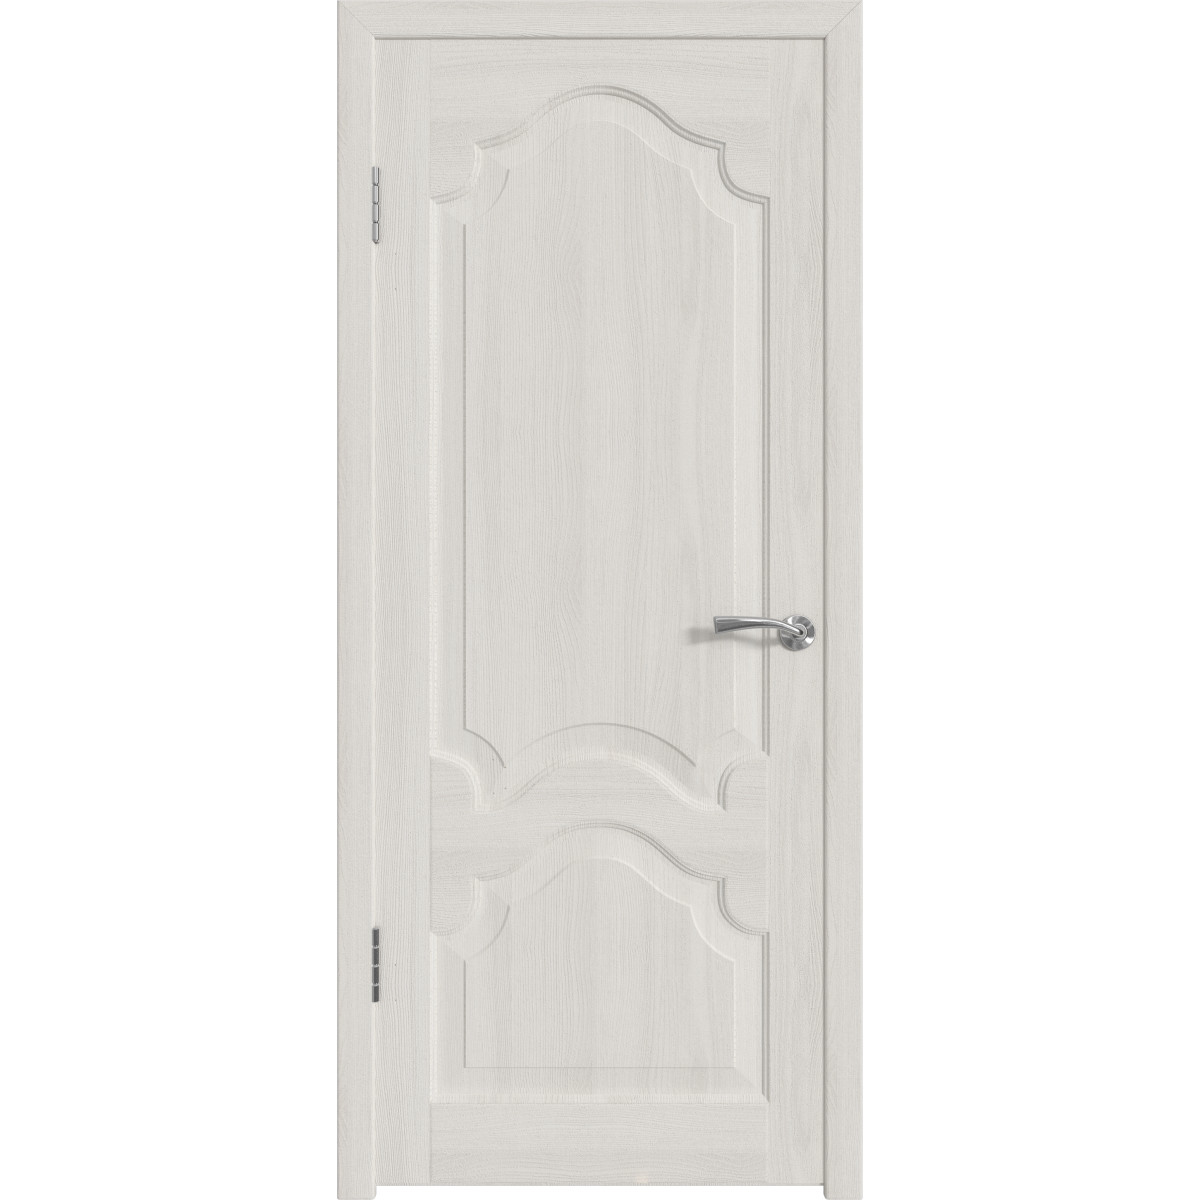 Дверь межкомнатная глухая с замком и петлями в комплекте Венеция 70x200 см ПП цвет белёный дуб